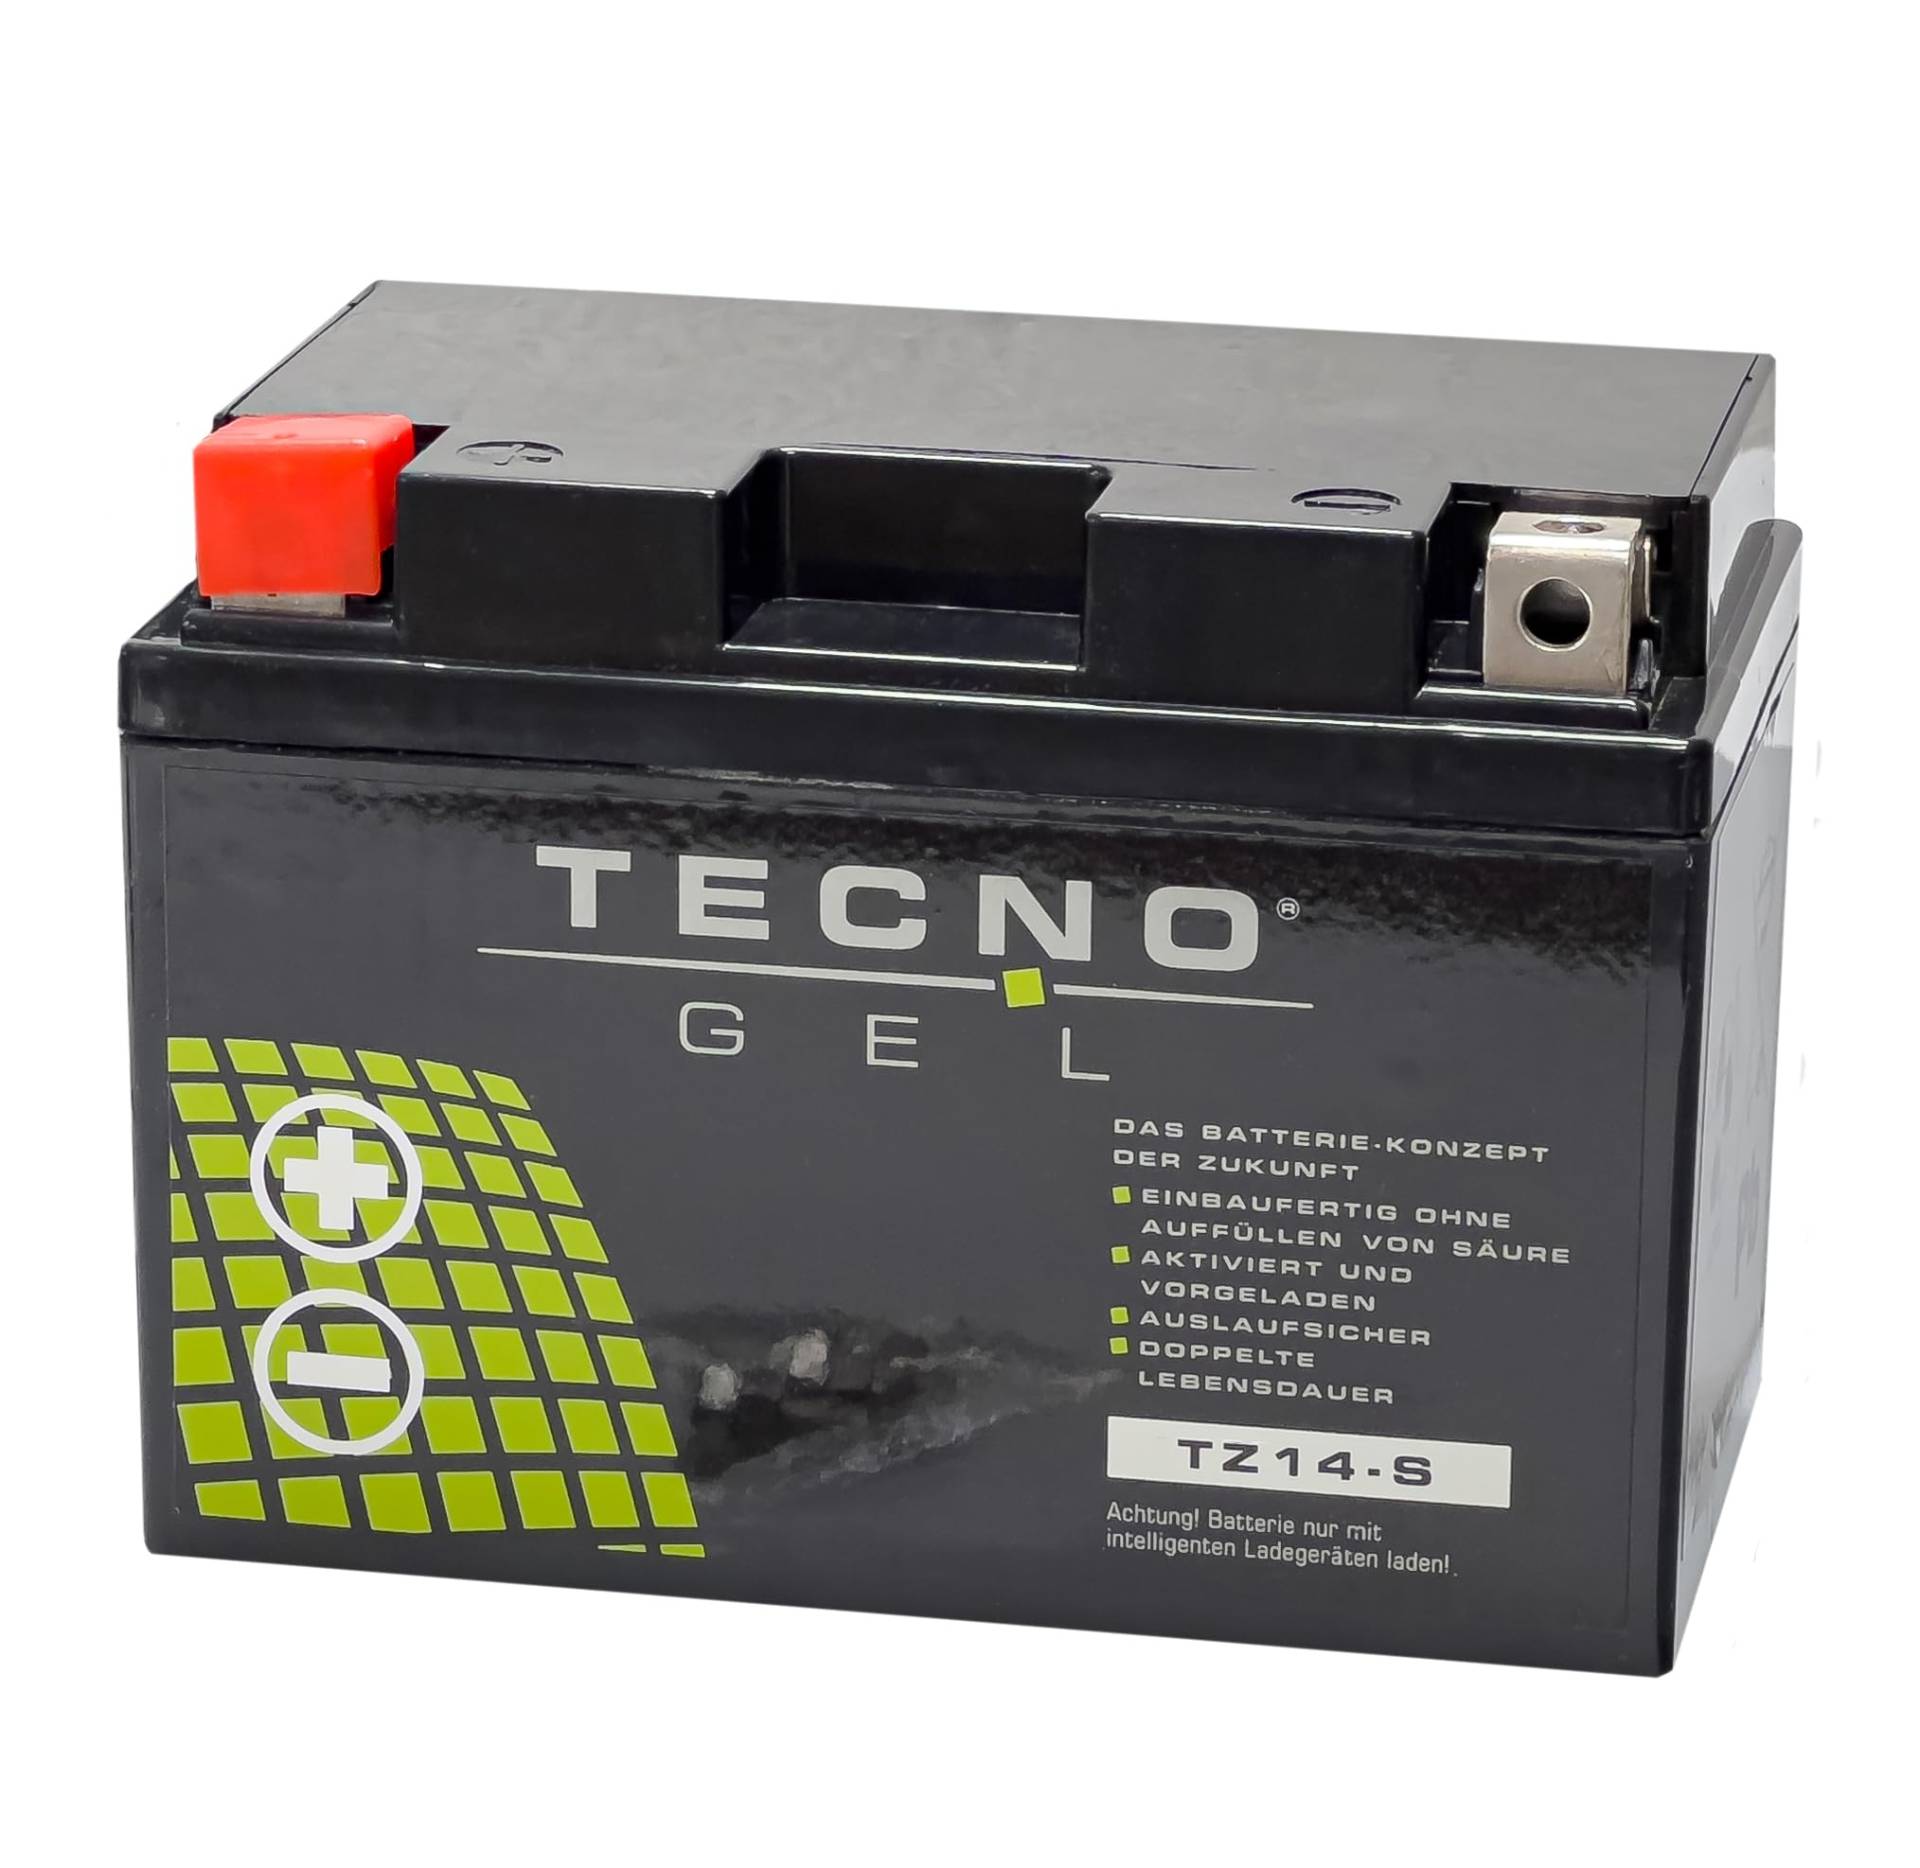 TECNO-GEL Motorrad-Batterie YTZ14-S für Ktm RC8 1190, 12V Gel-Batterie 11,3Ah (DIN 51101), 151x87x110 mm inkl. Pfand von Wirth-Federn